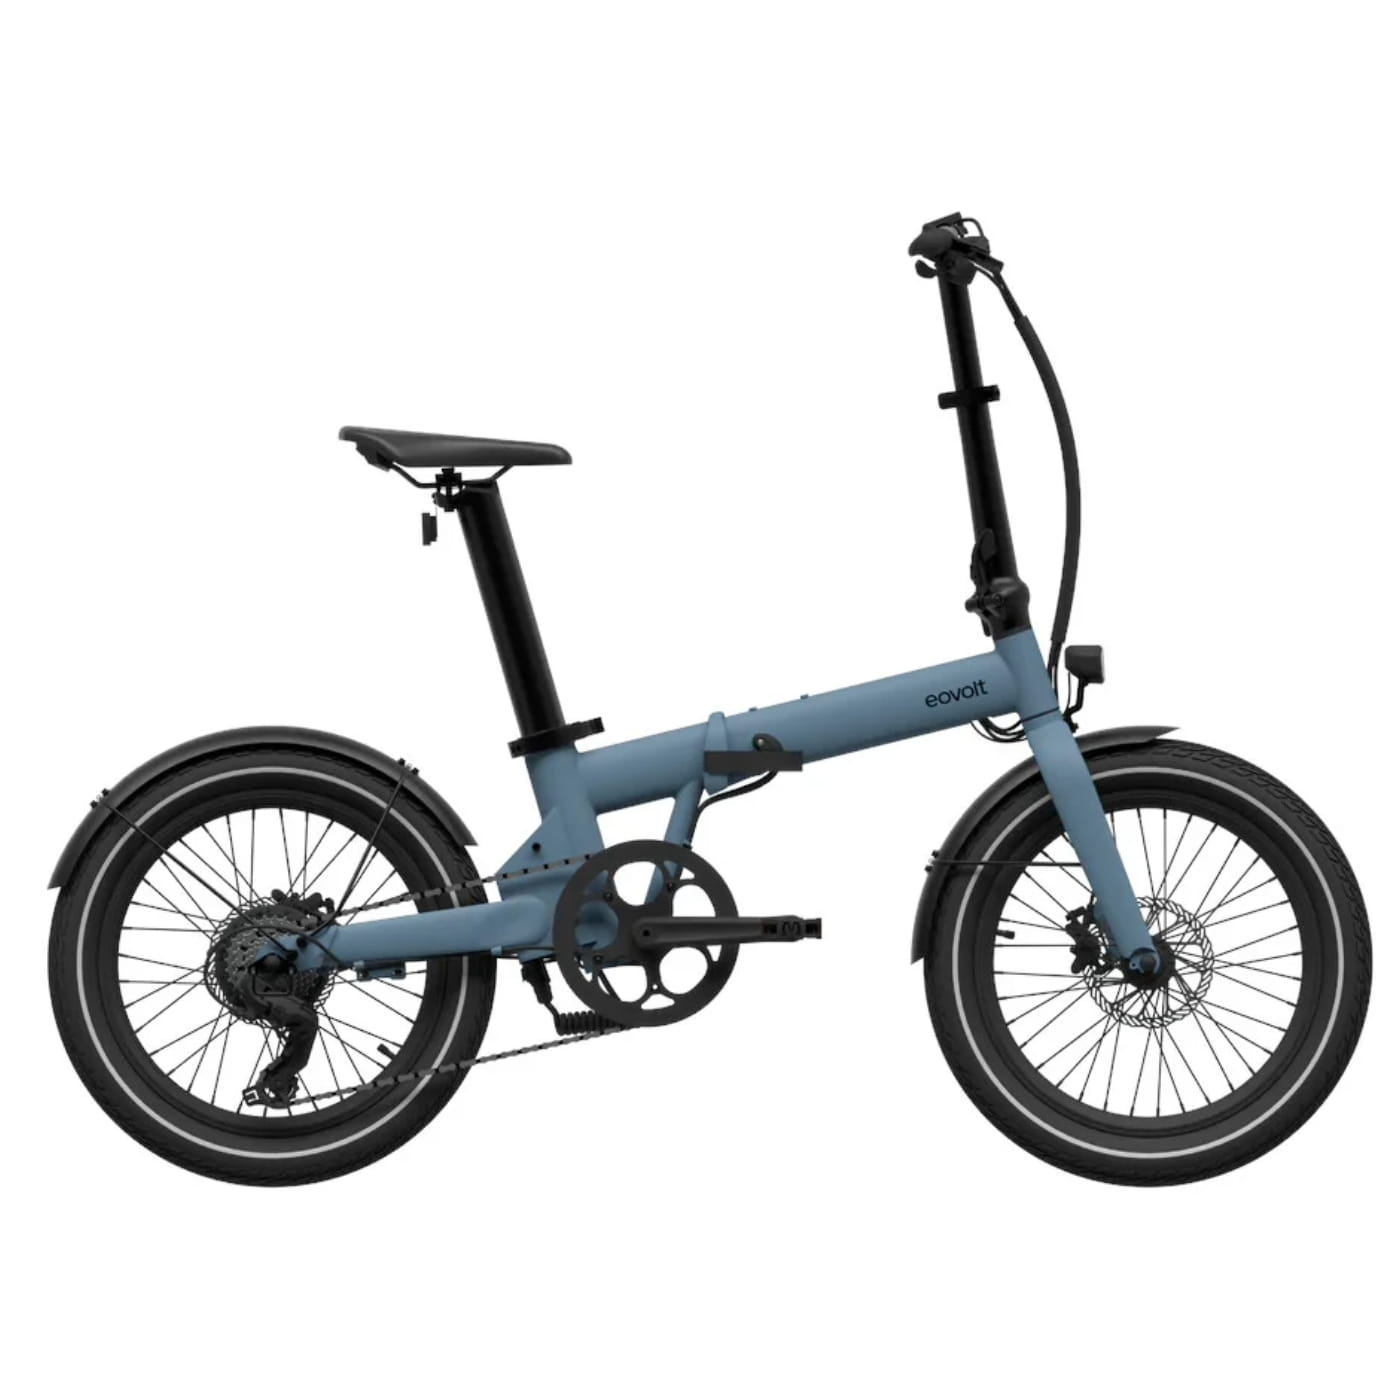 Bicicleta Eléctrica Plegable Treck - NOVAMOTOS Bicicleta Eléctrica Plegable:  Movilidad Inteligente y Compacta